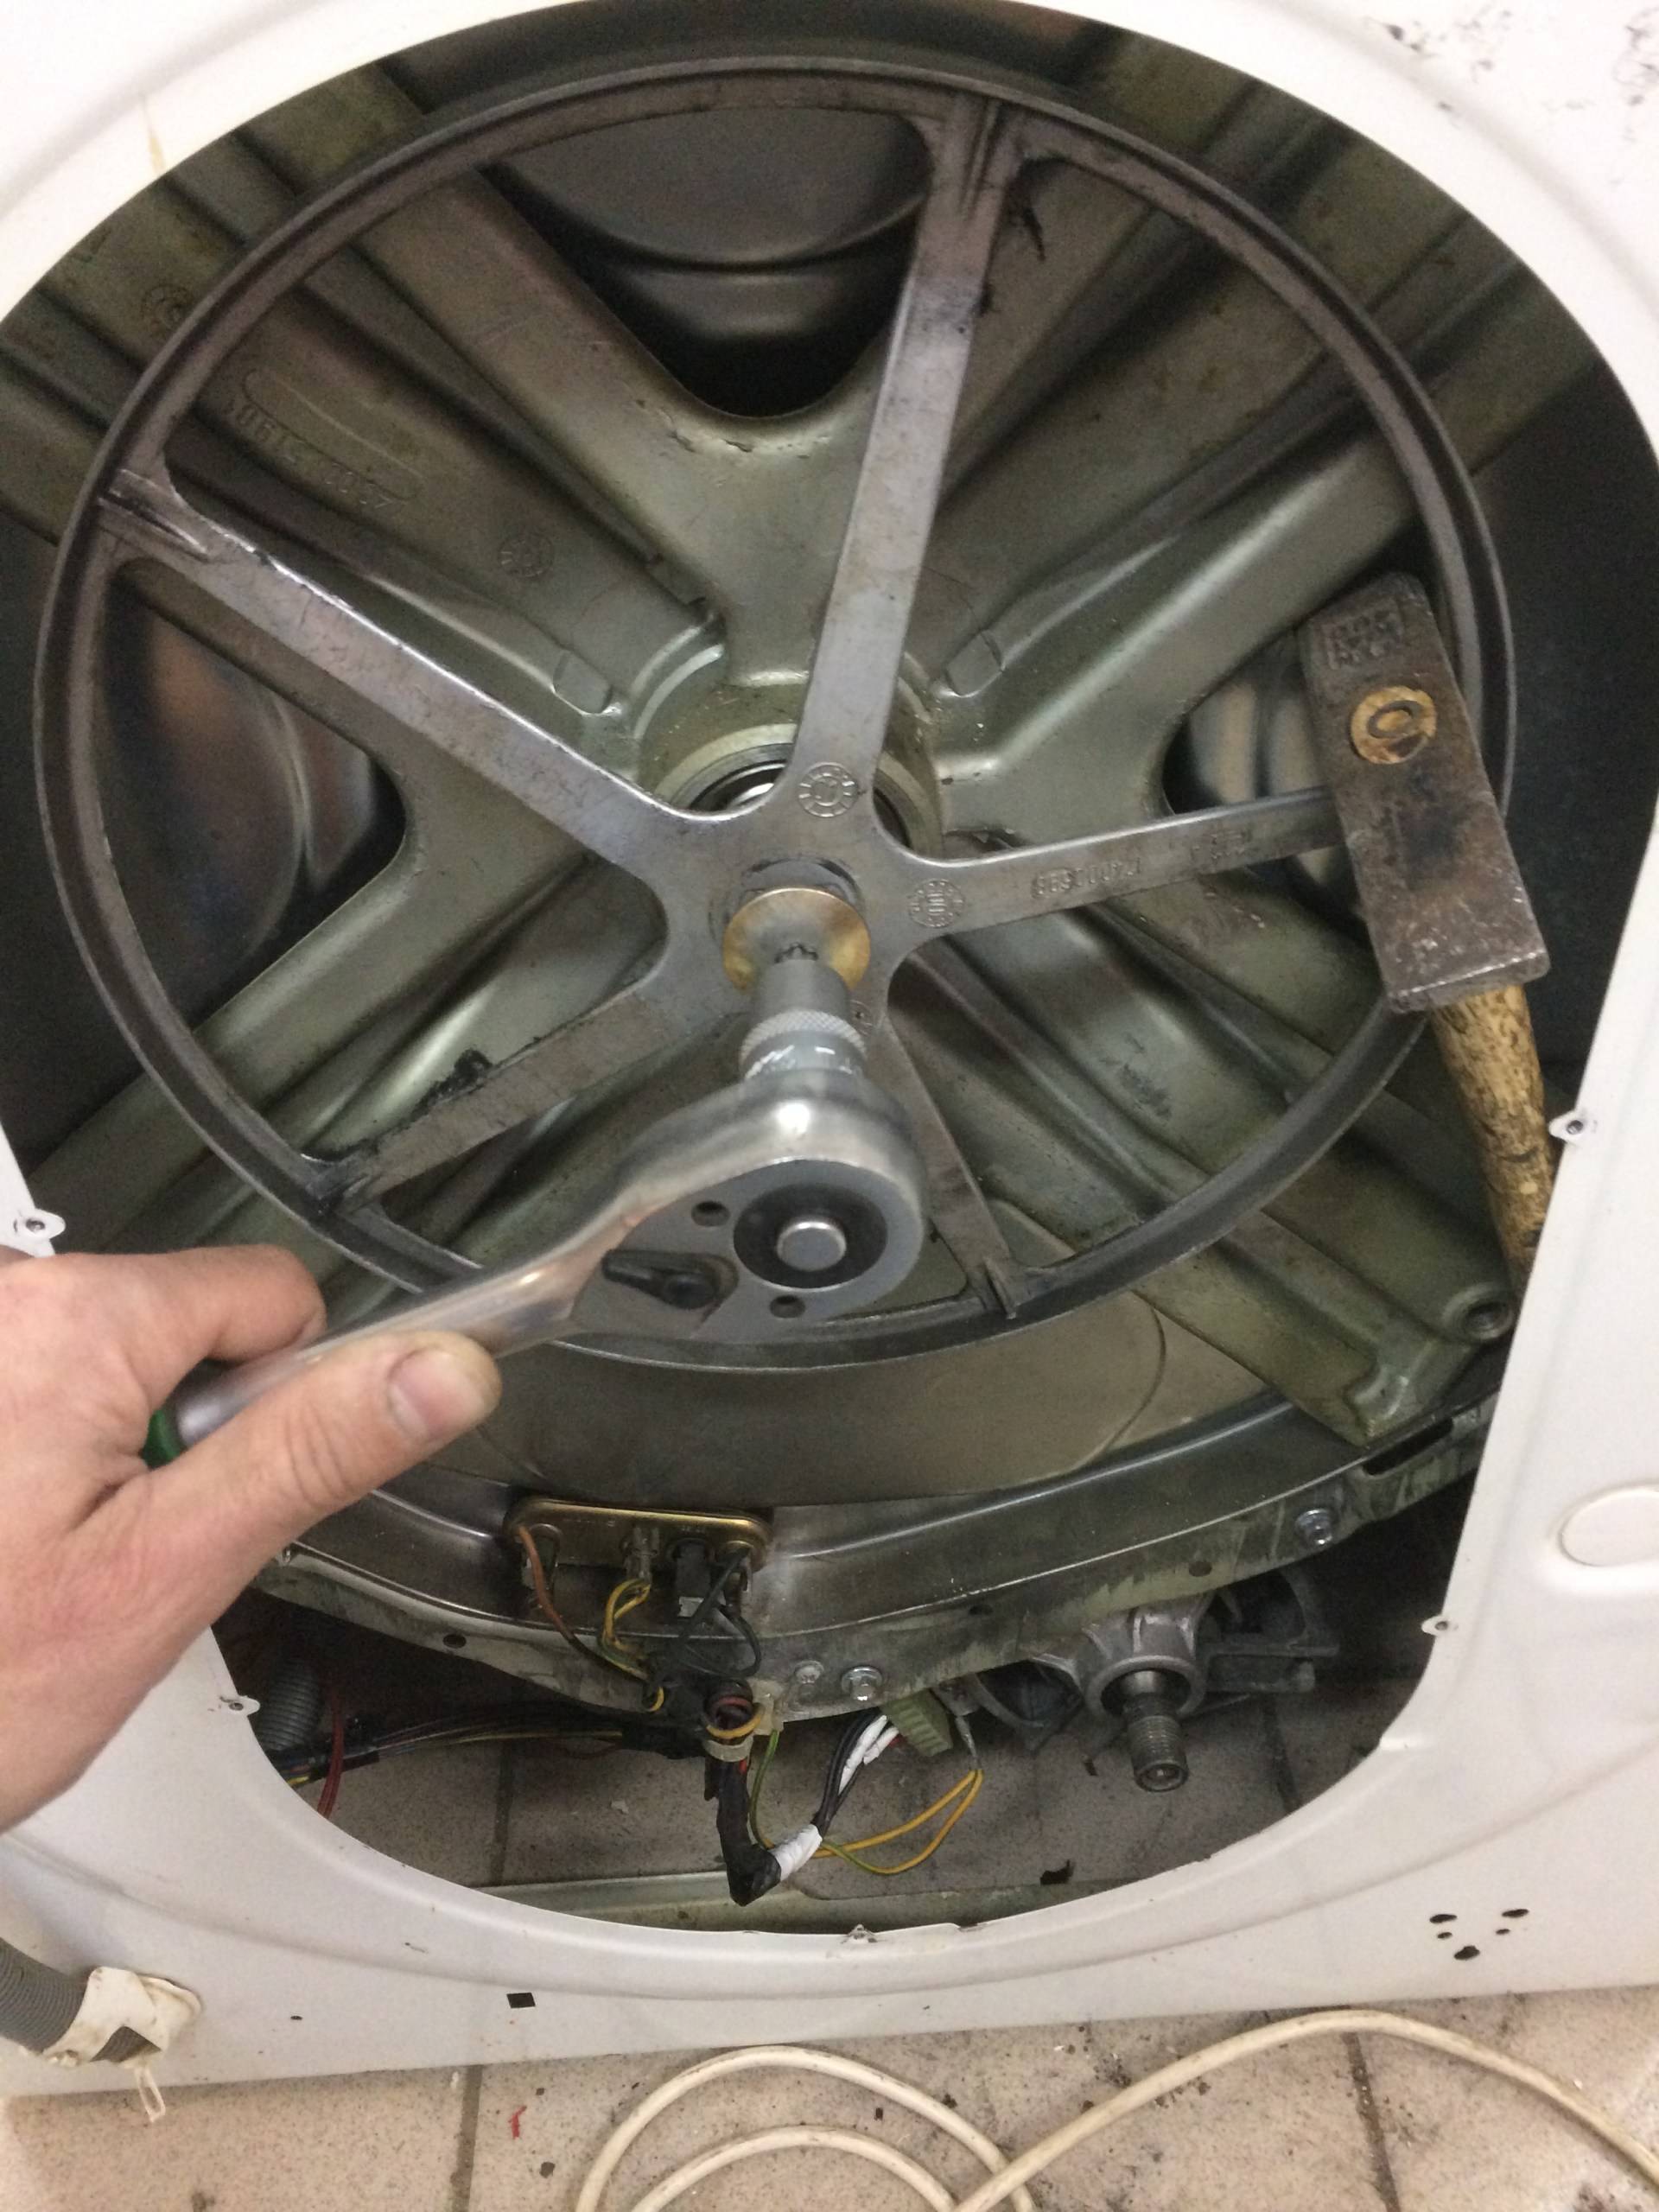 Замена подшипника в стиральной машине indesit: как снять и поменять подшипник барабана своими руками